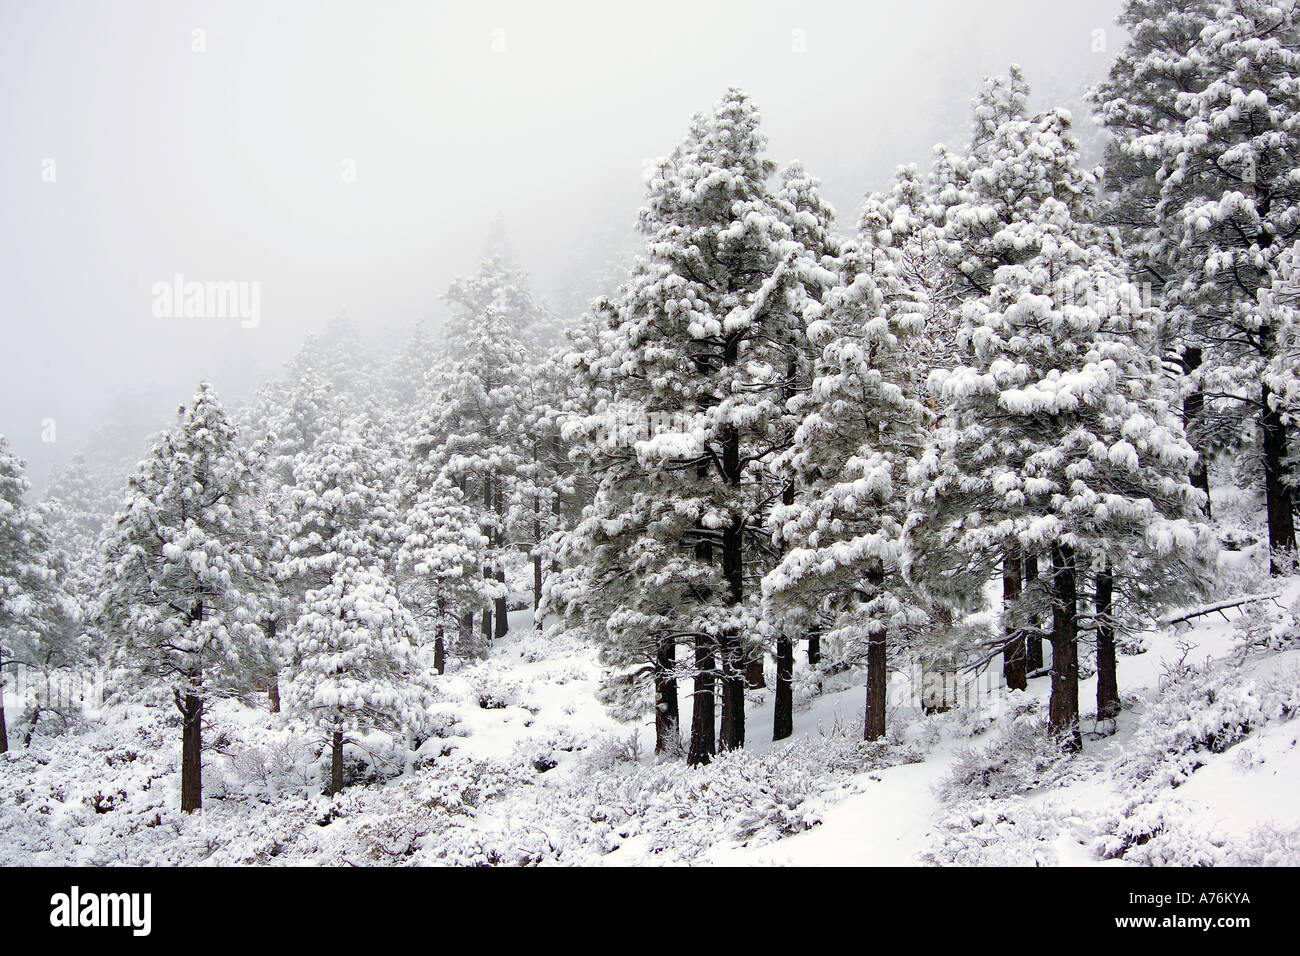 Alberi sempreverdi coperto di neve fresca nella nebbia vicino al lago Tahoe negli Stati Uniti. Foto Stock